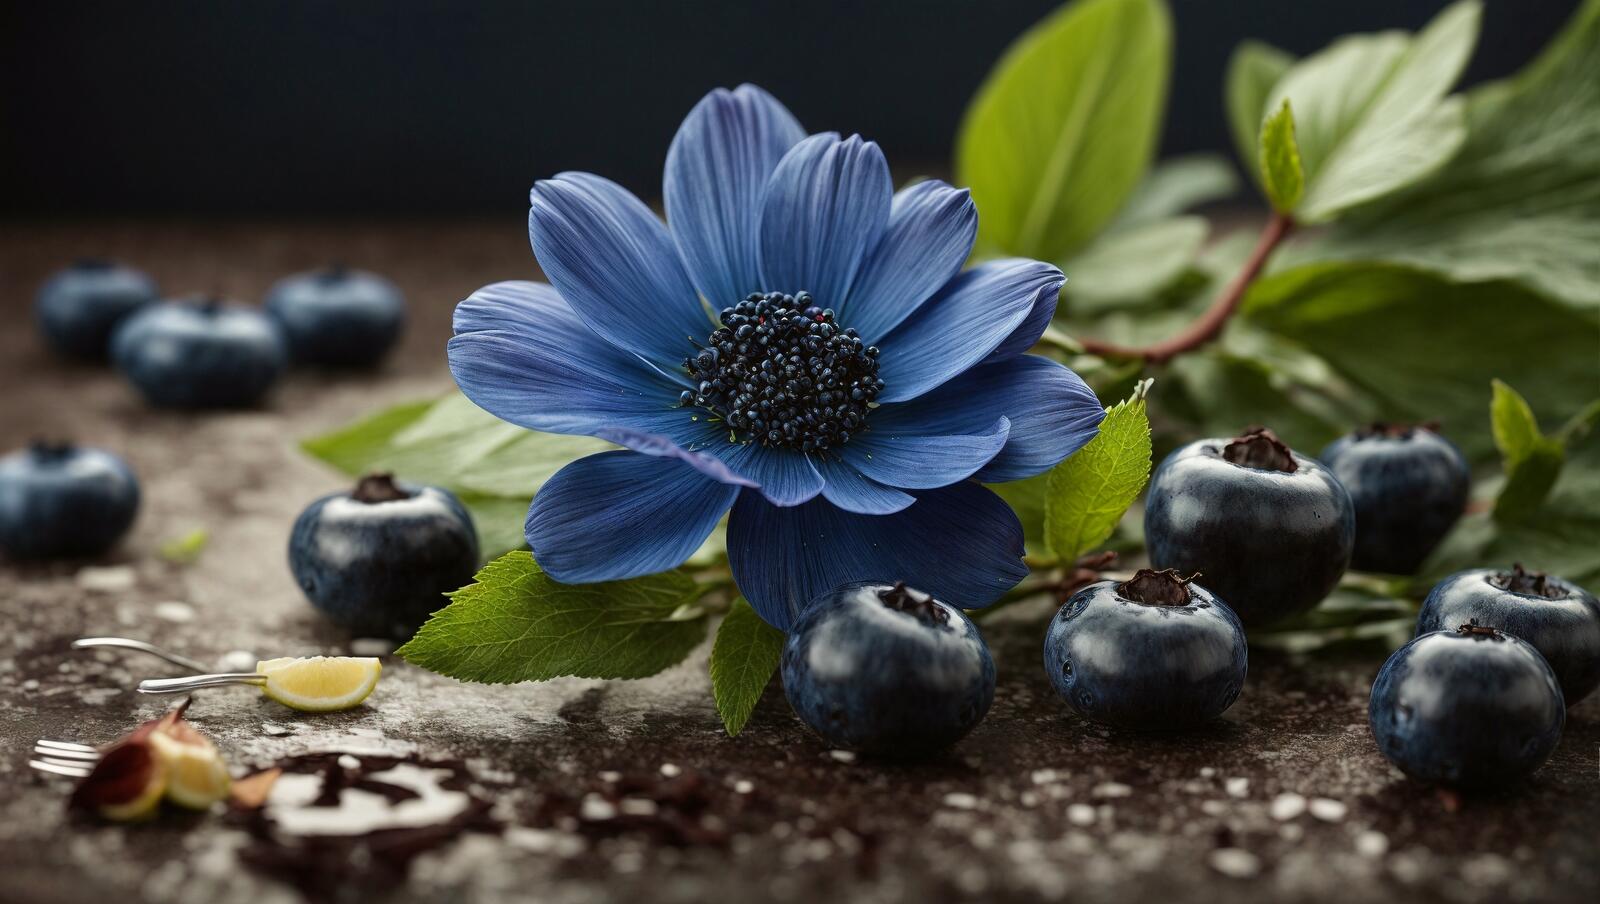 Бесплатное фото Голубой цветок лежит на земле рядом с мелкими плодами и листьями.